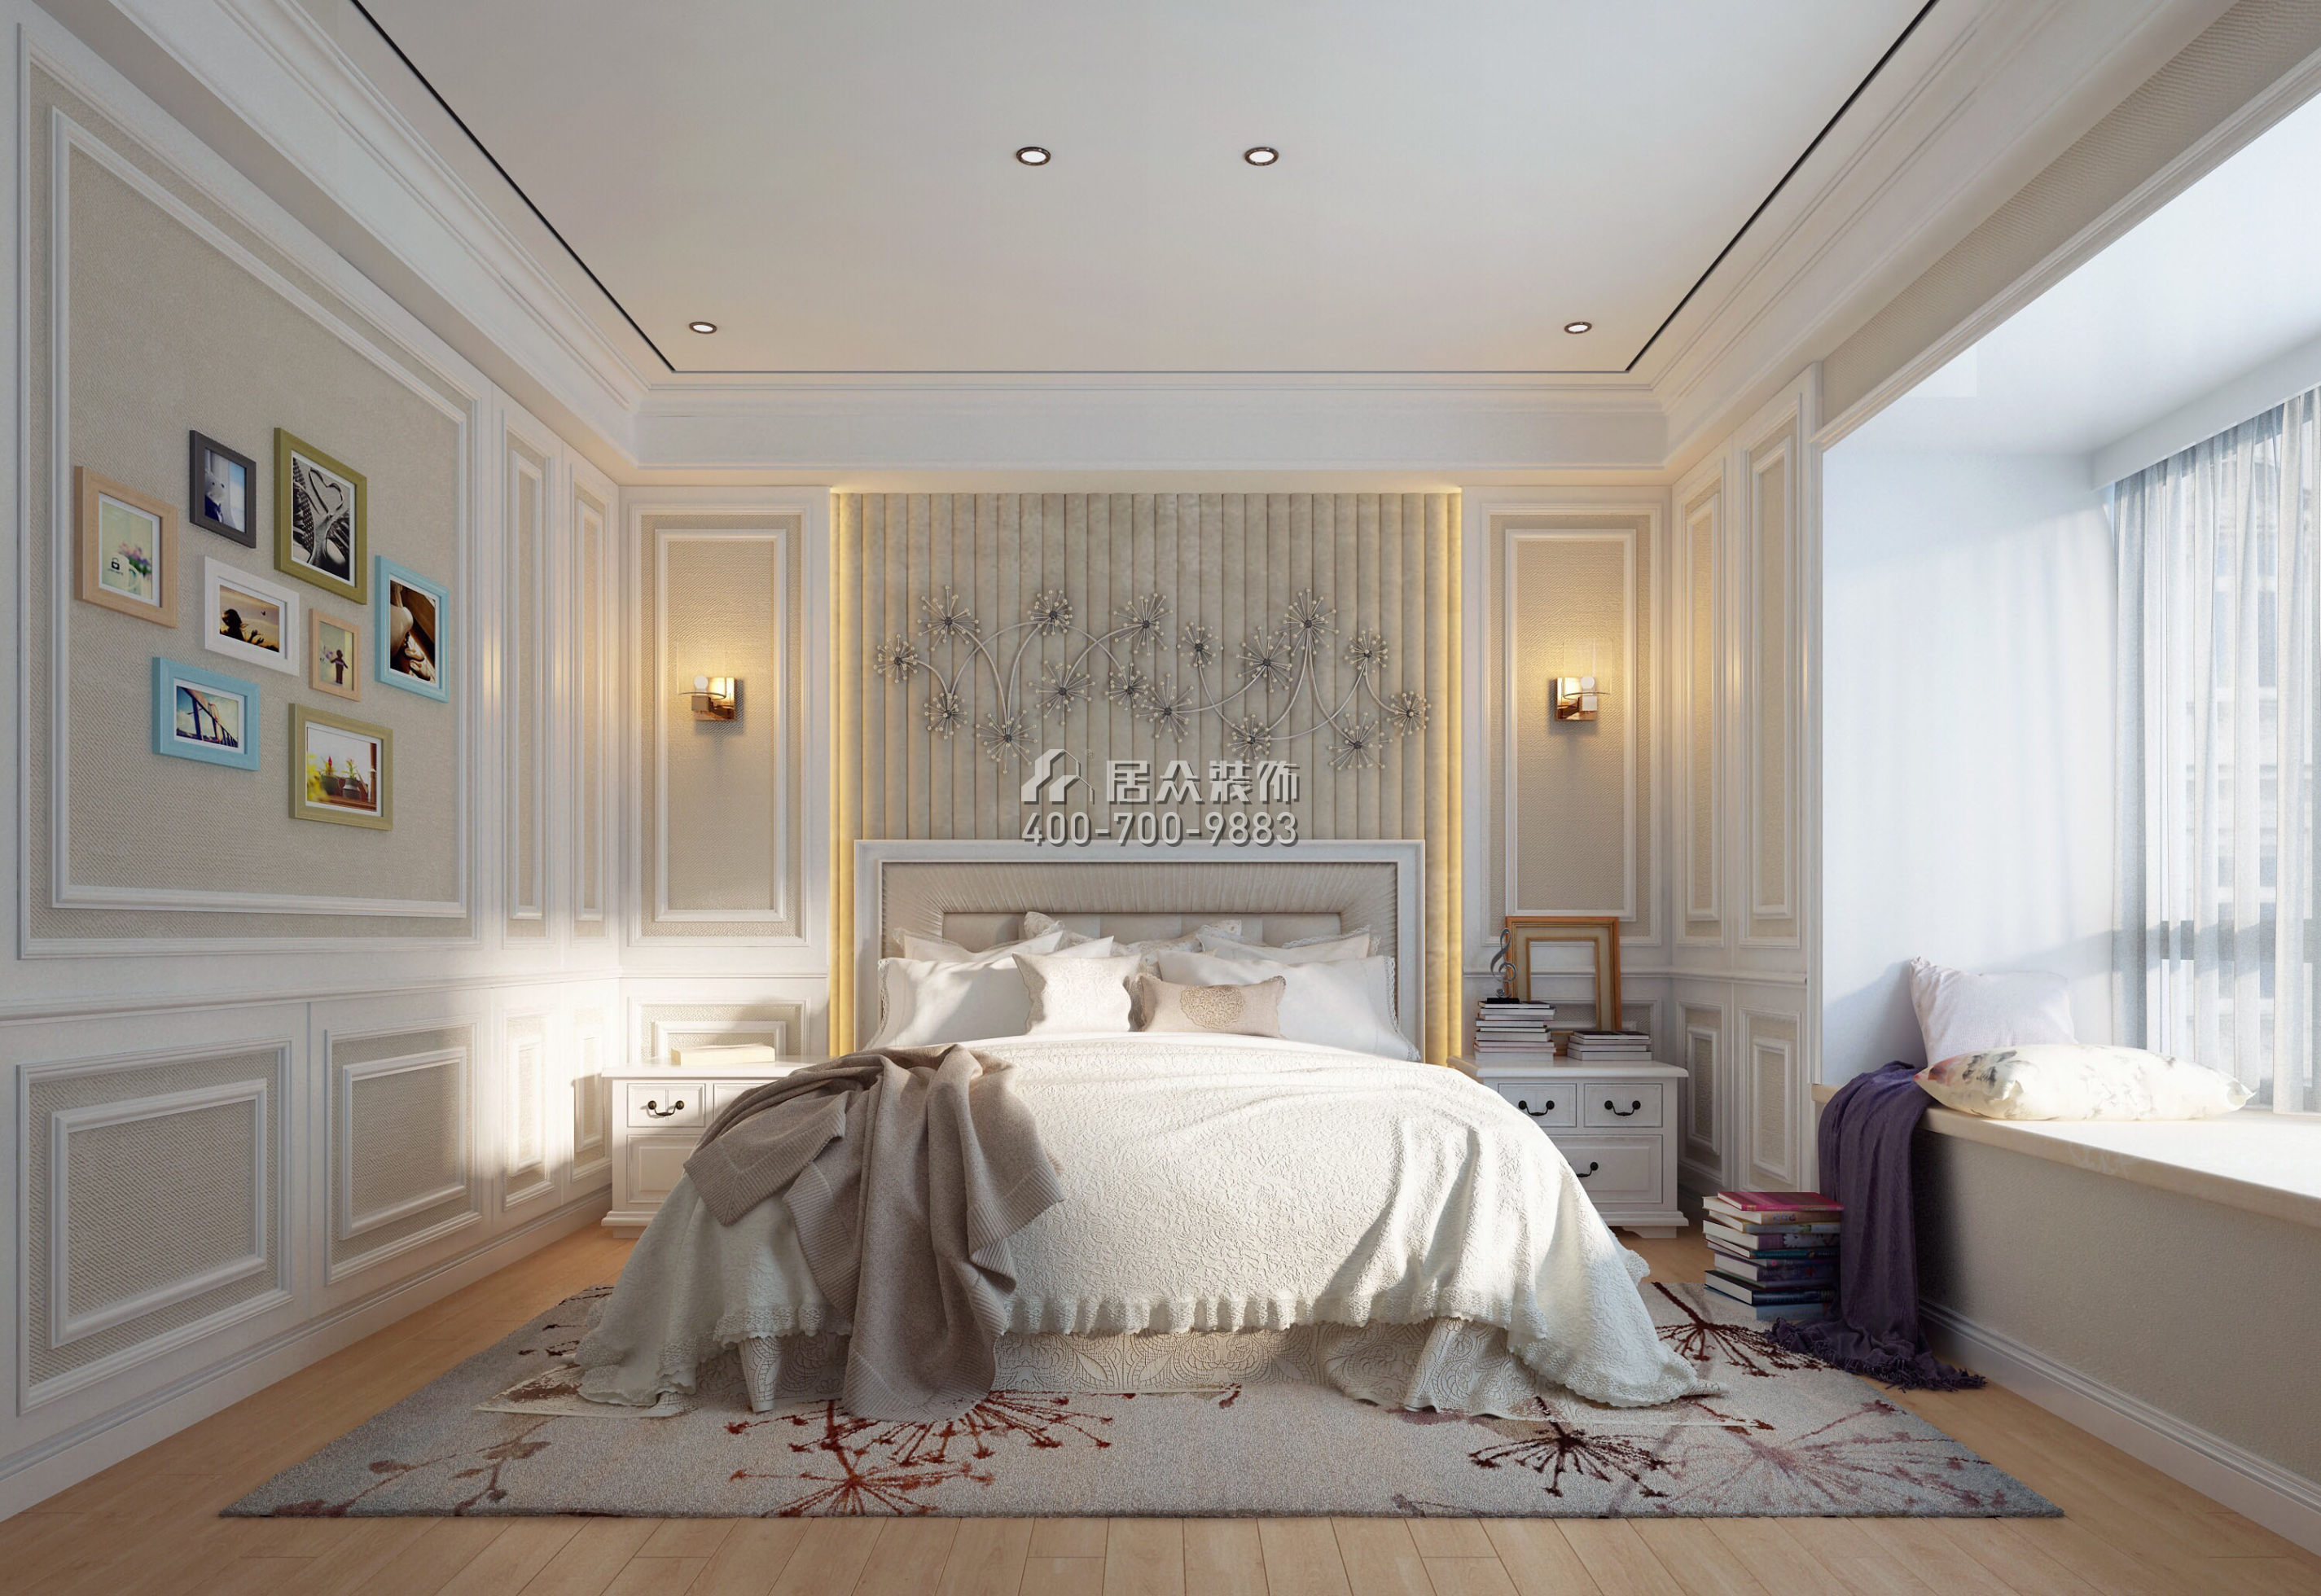 紅樹別院173平方米美式風格平層戶型臥室裝修效果圖